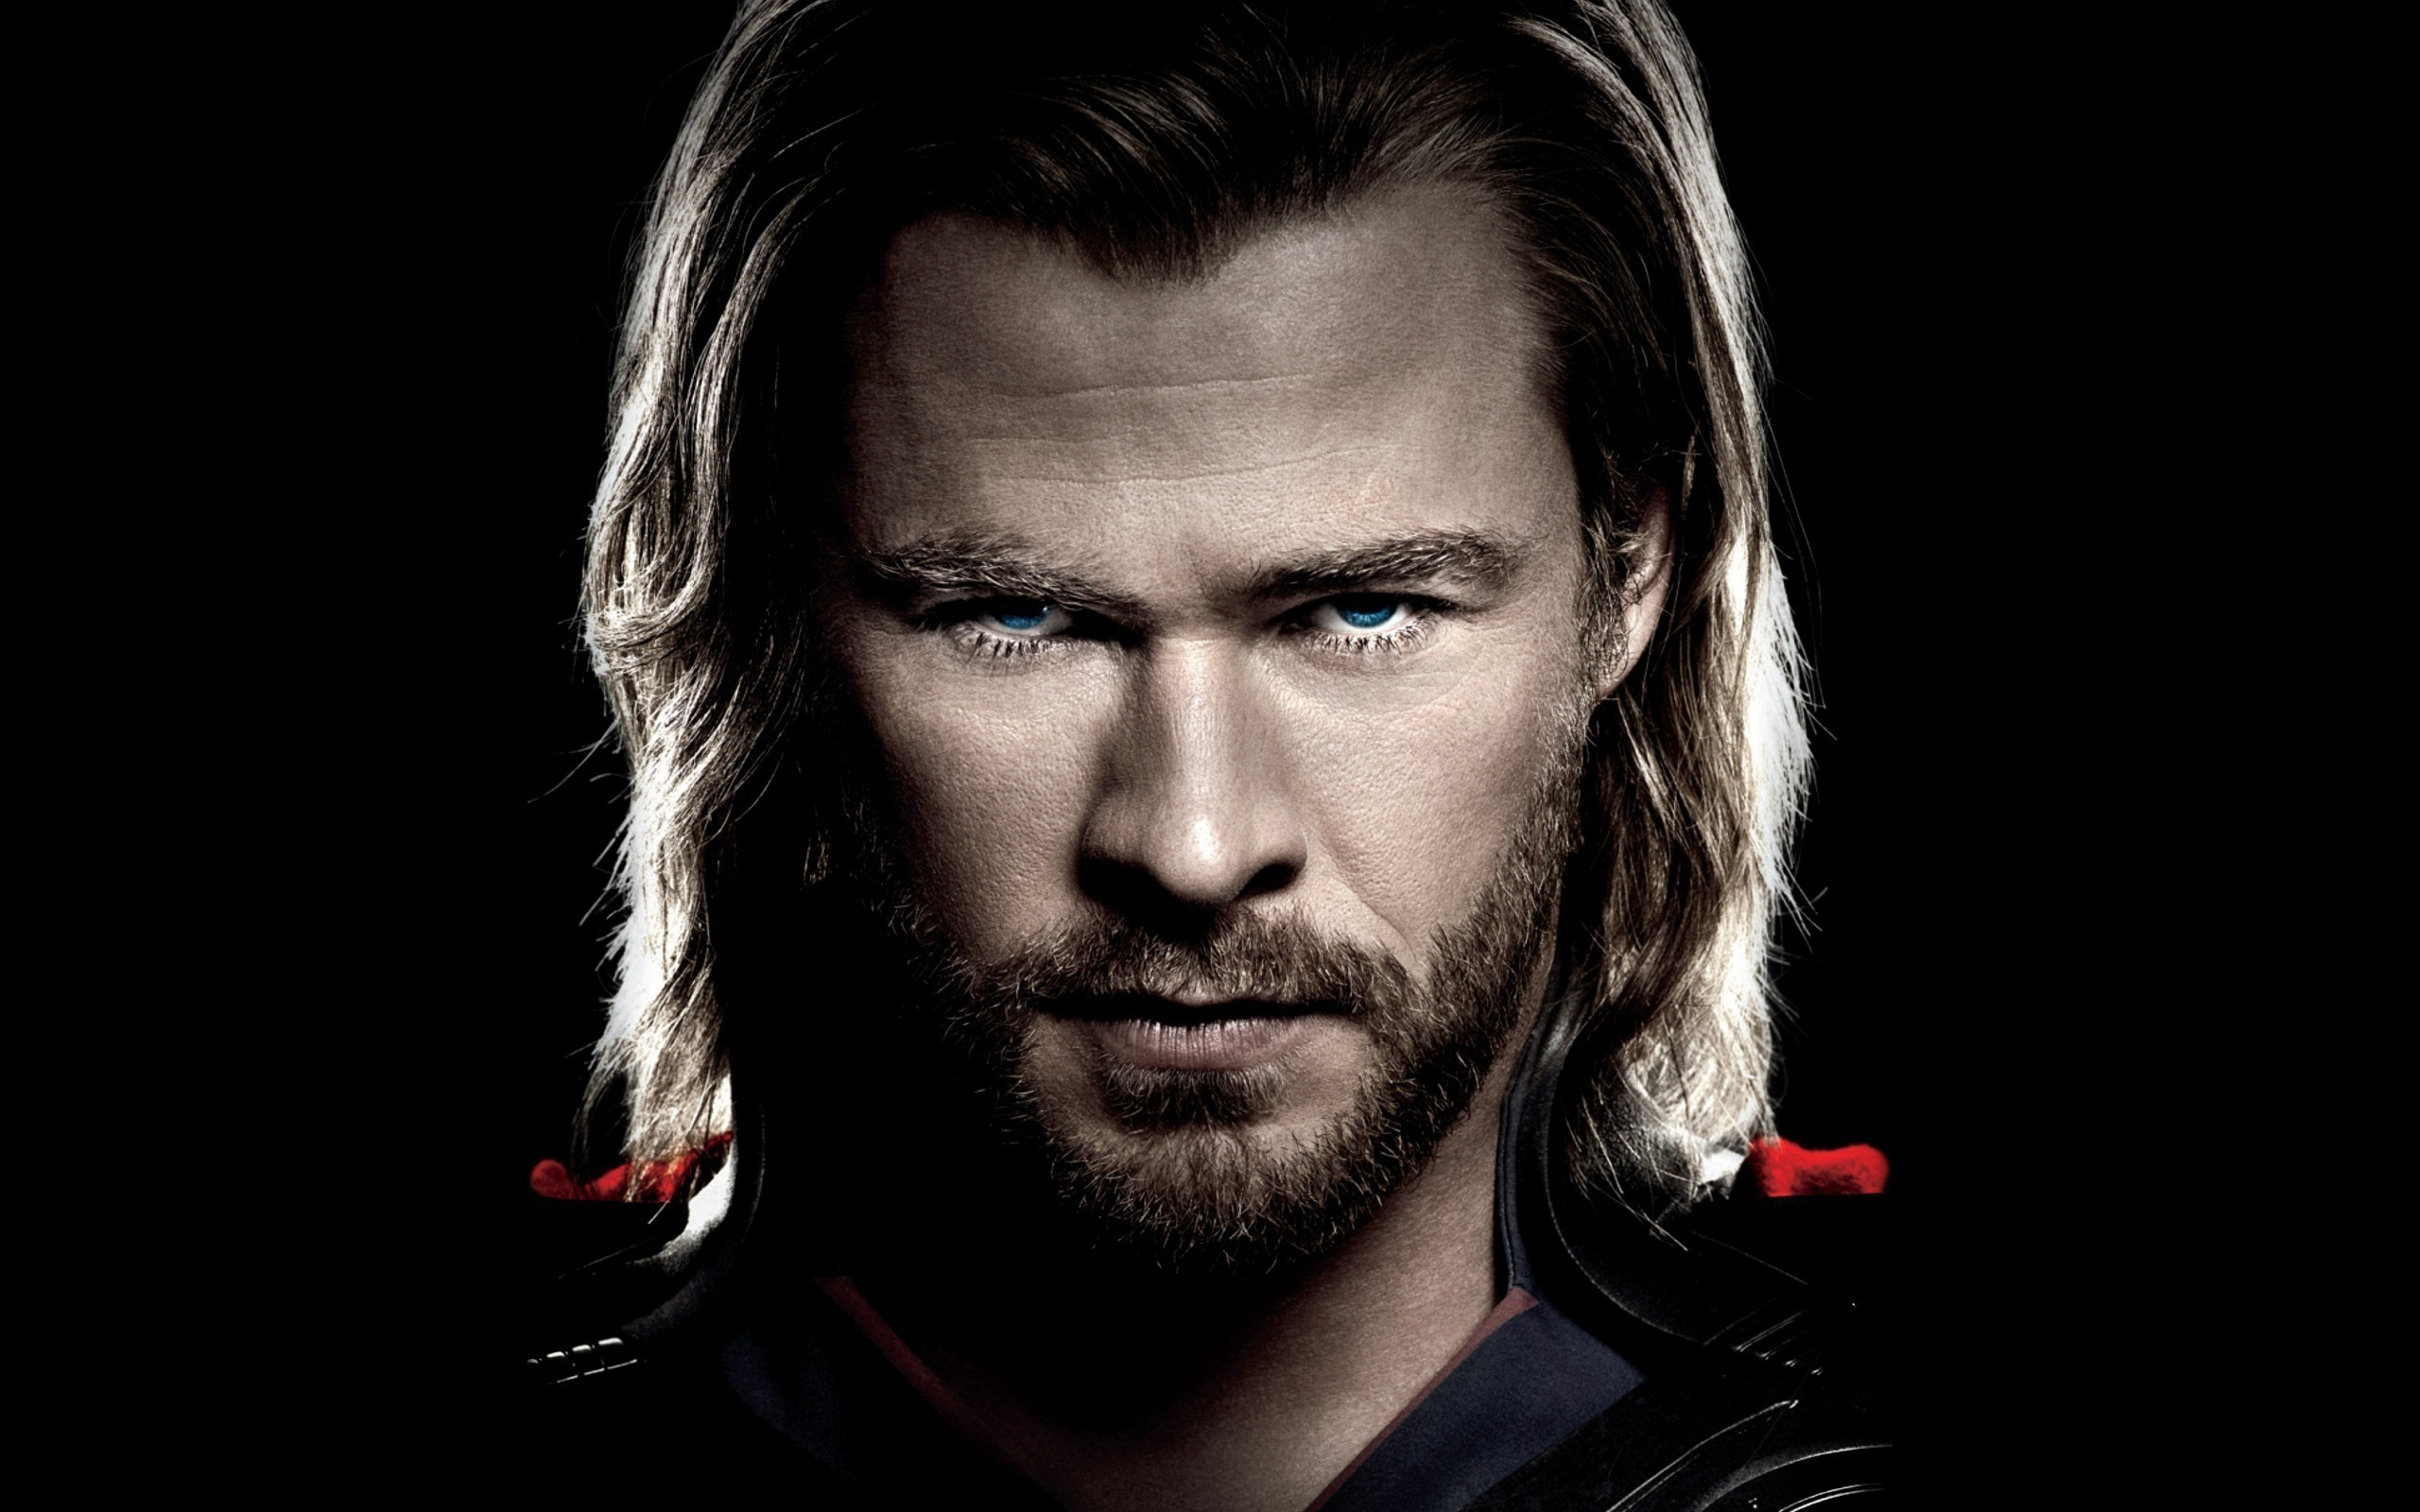 Chris Hemsworth, HD background, Movie star, Handsome actor, 2560x1600 HD Desktop